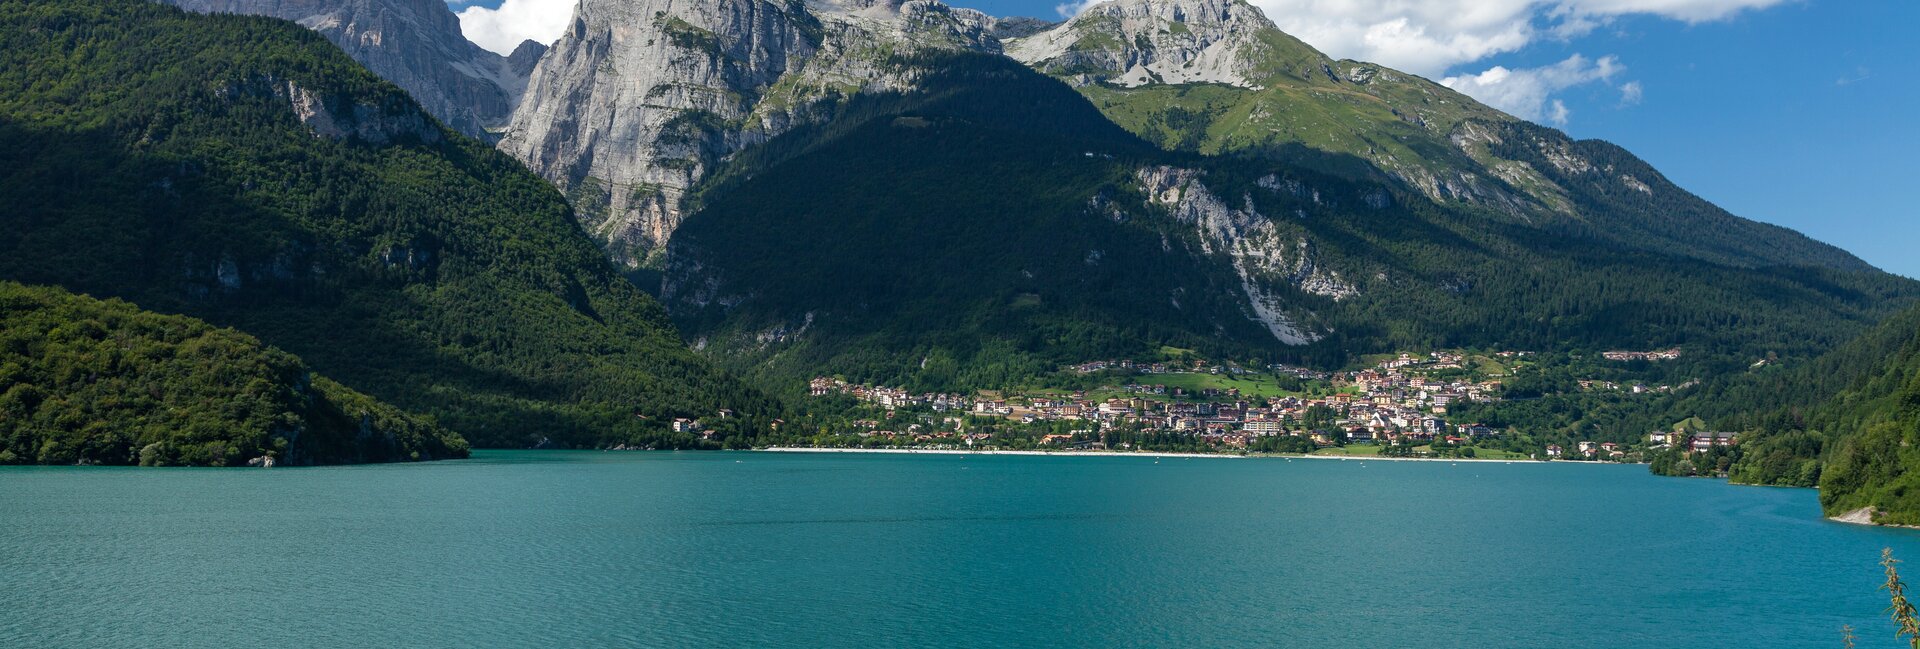 Dolomiti Paganella - Molveno - Lago di Molveno